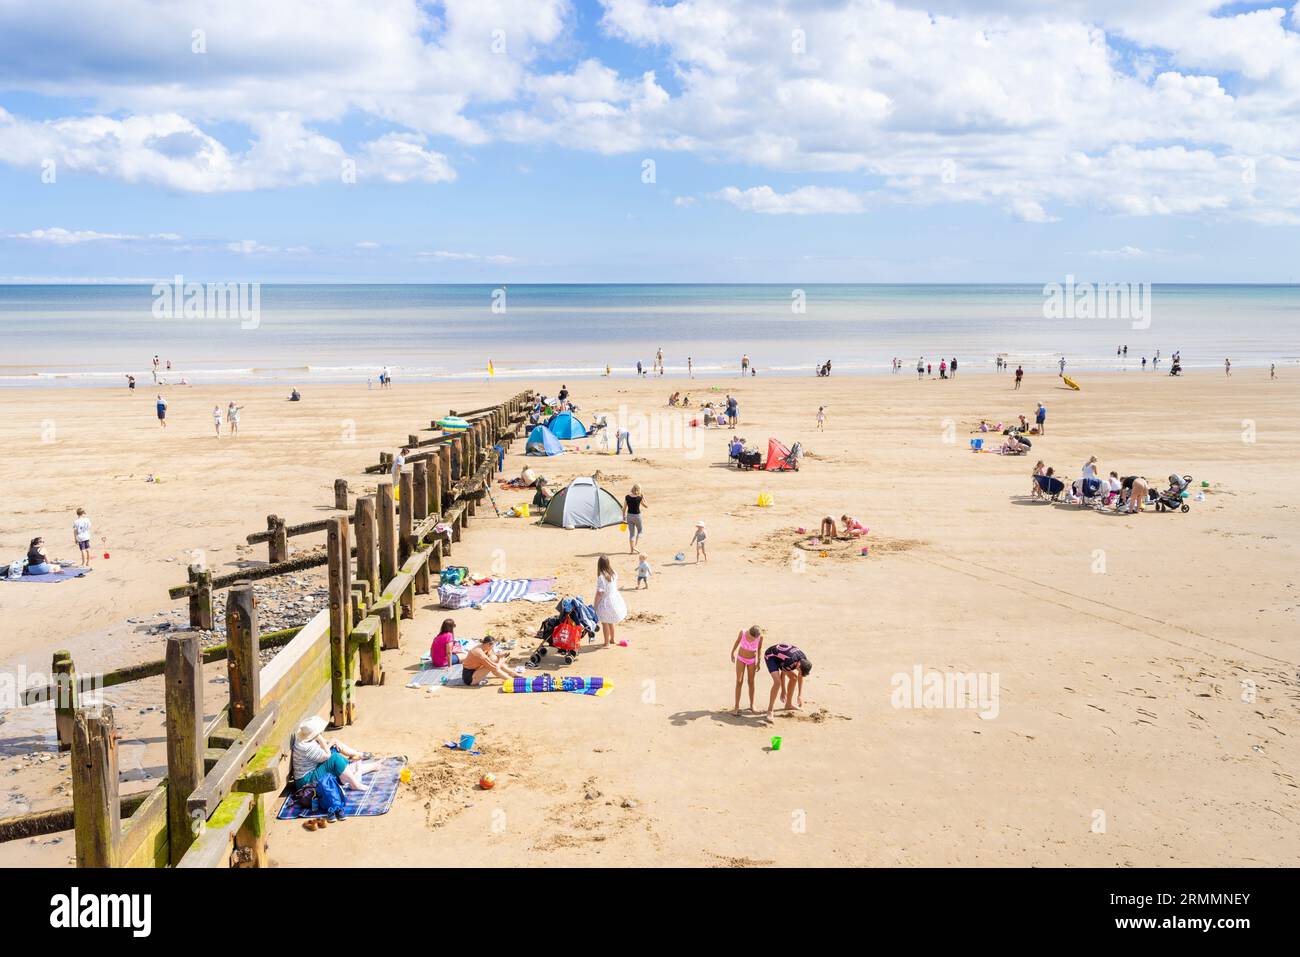 Spiaggia di Hornsea con groynes di legno e gente che prende il sole sulla grande spiaggia sabbiosa di Hornsea East Riding of Yorkshire Inghilterra Regno Unito Europa Foto Stock